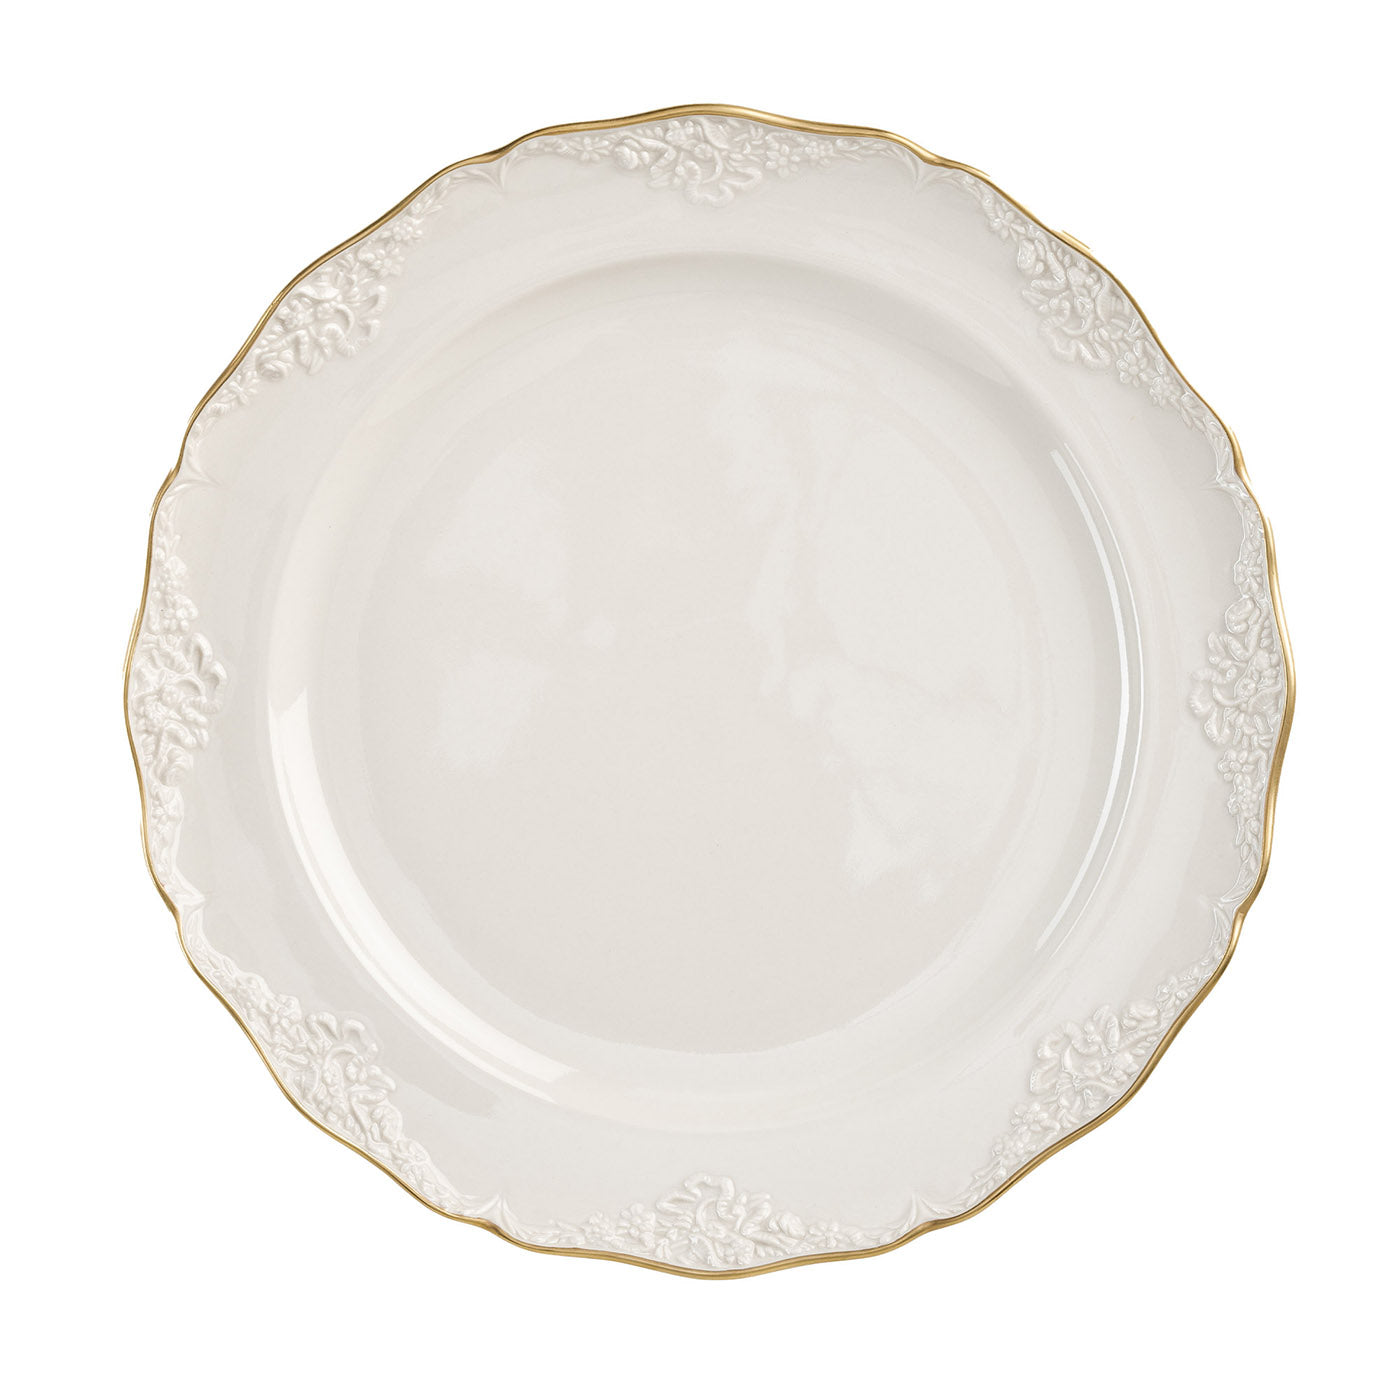 Irene - Lot de 2 assiettes plates moyennes blanches et dorées - Vue principale